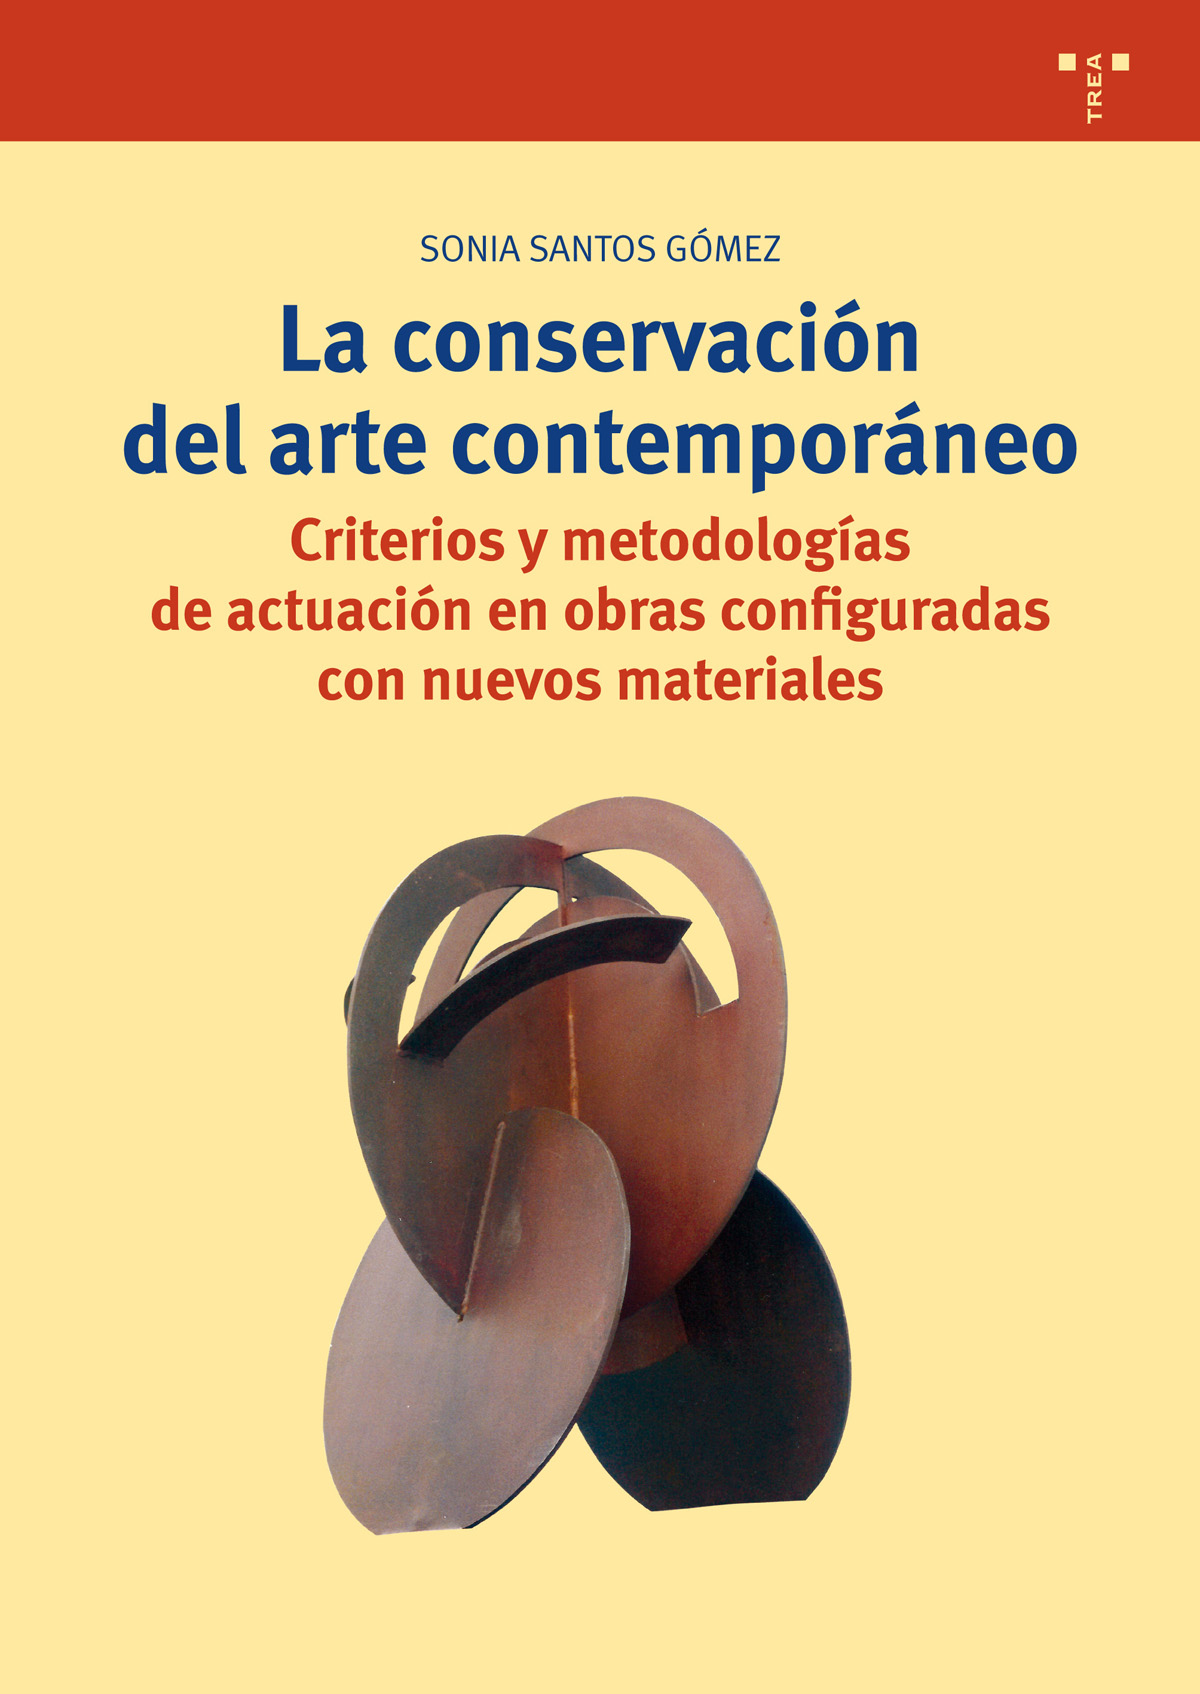 La conservación del arte contemporáneo   «Criterios y metodologías de actuación en obras configuradas con nuevos materiales»